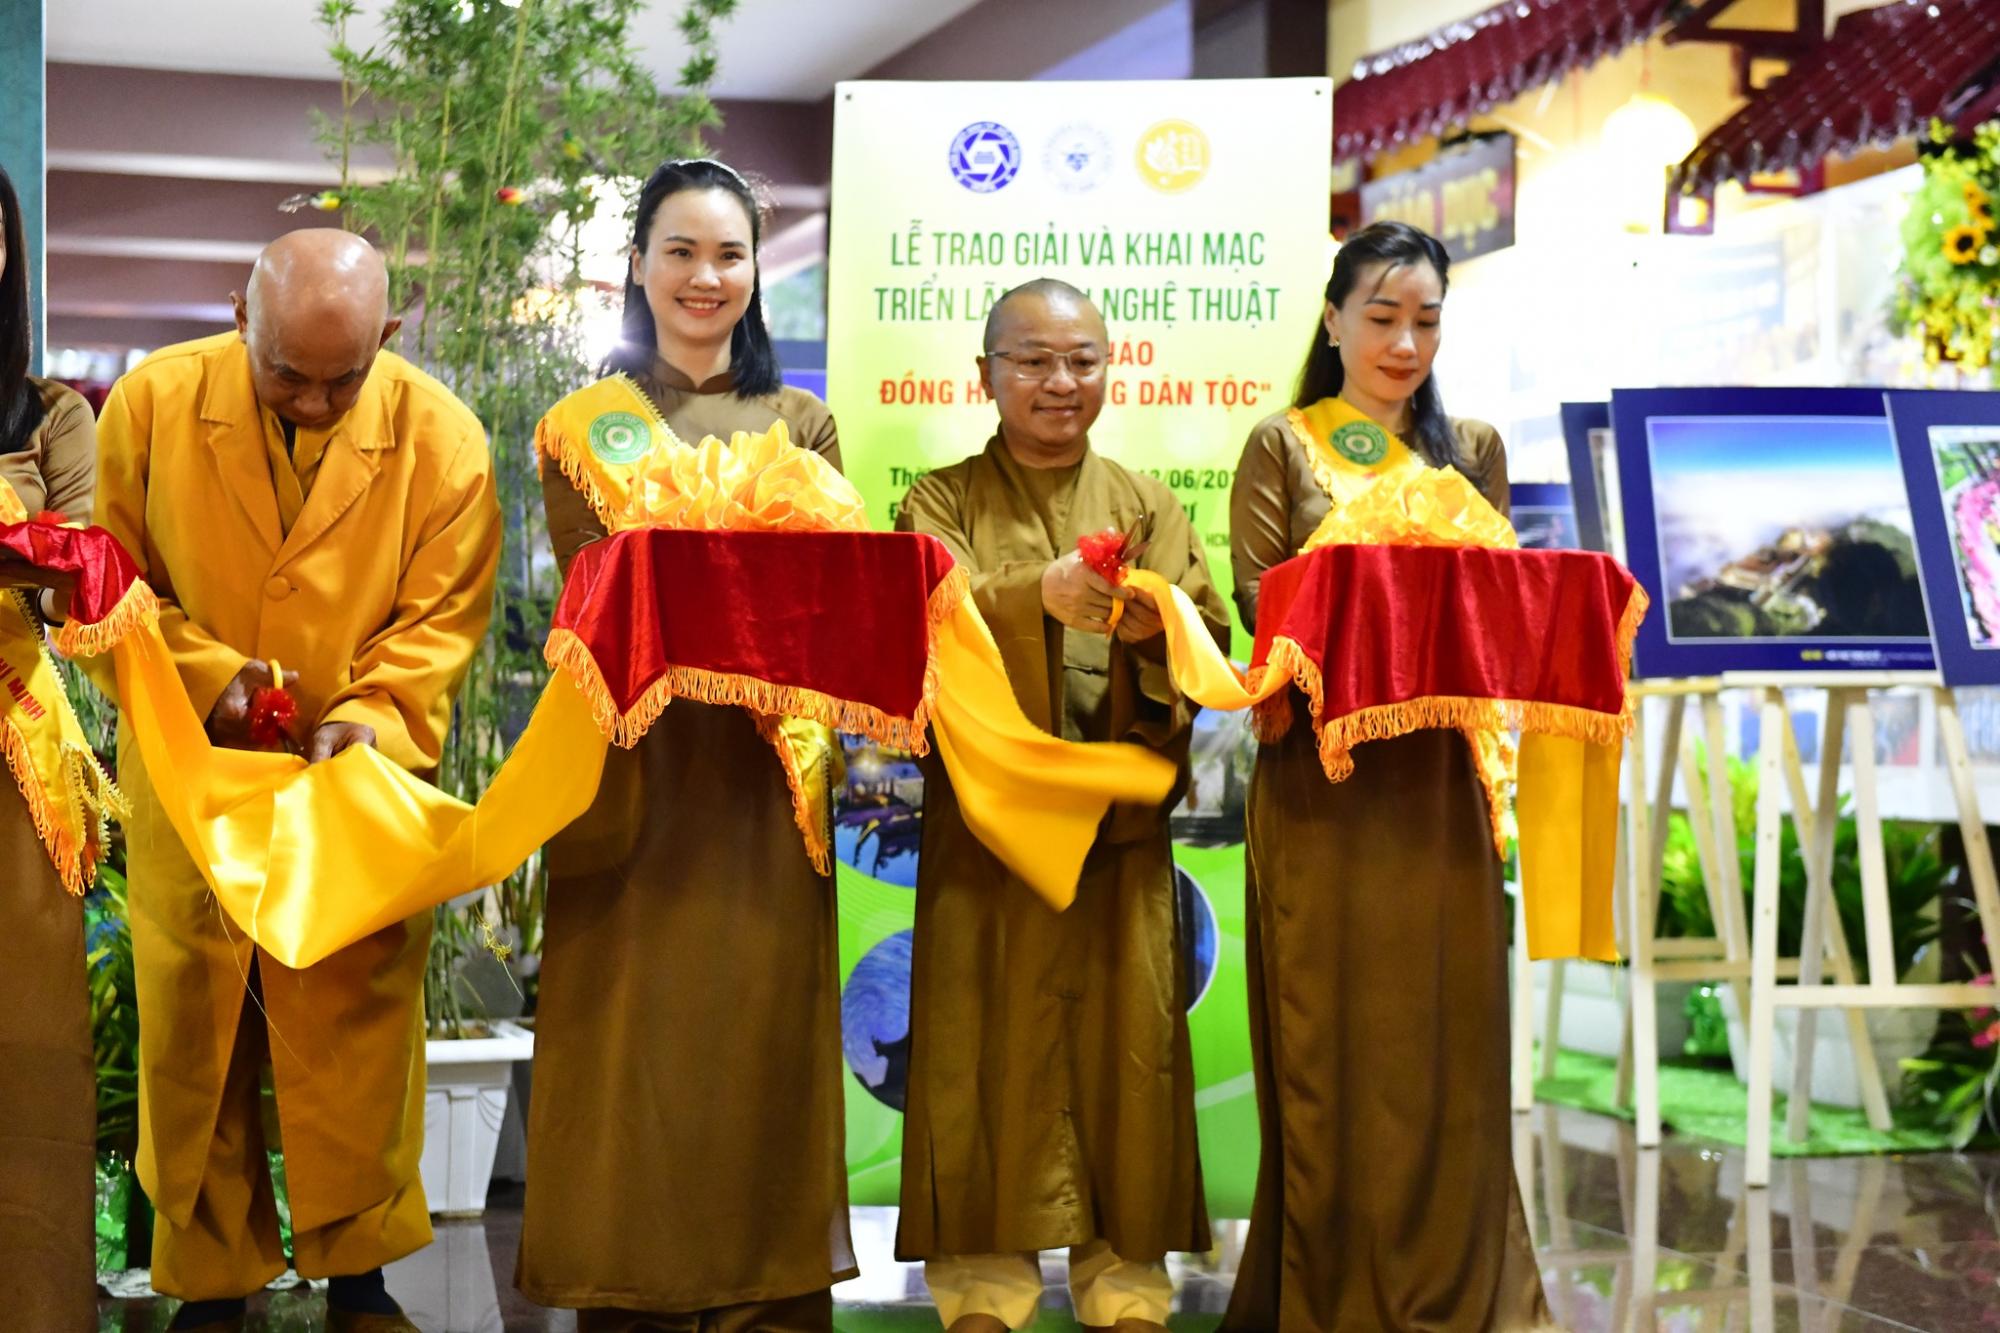 Lễ trao giải và Khai mạc Triển lãm ảnh nghệ thuật "Phật giáo đồng hành cùng dân tộc"